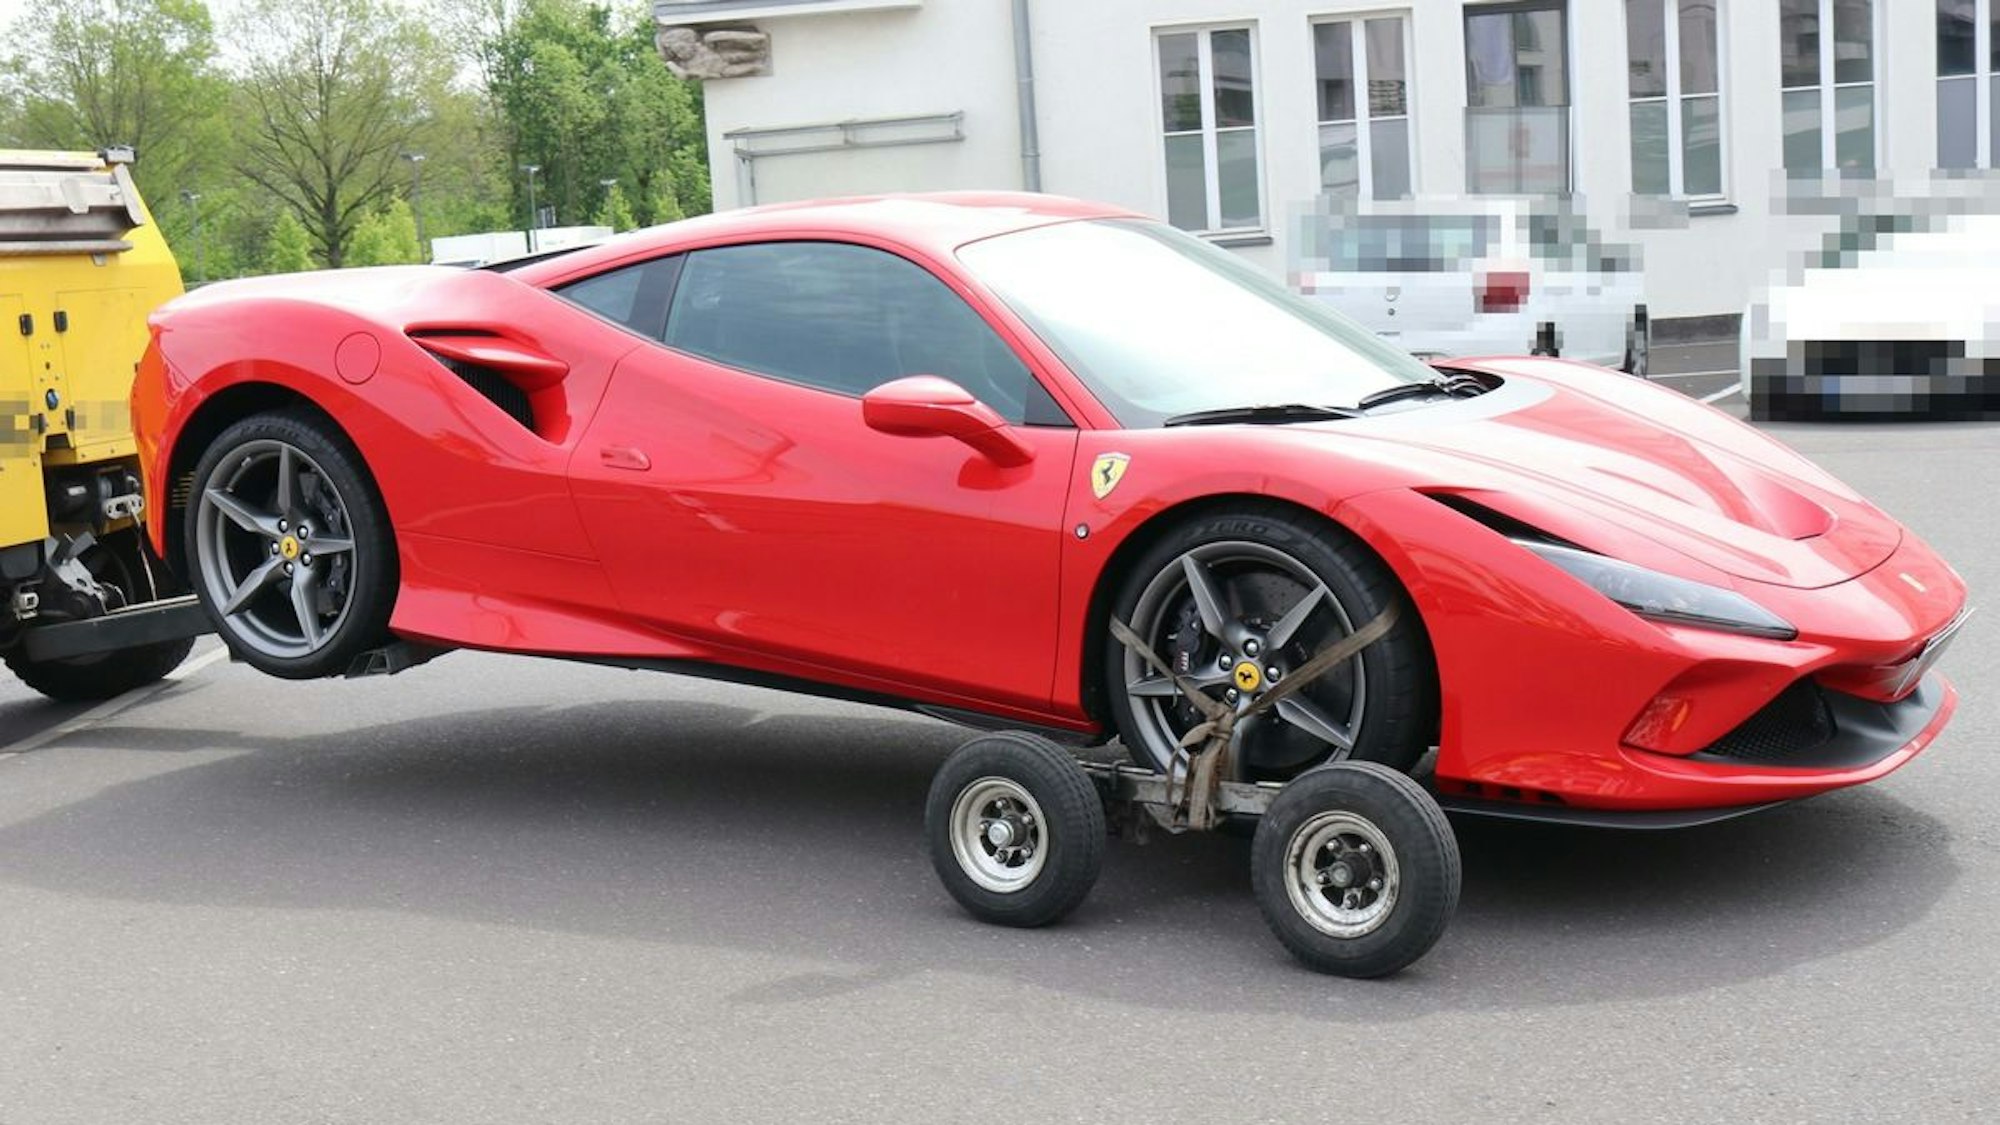 Mehrere Fahrzeuge, darunter auch ein roter Ferrari, wurden von der Polizei beschlagnahmt.